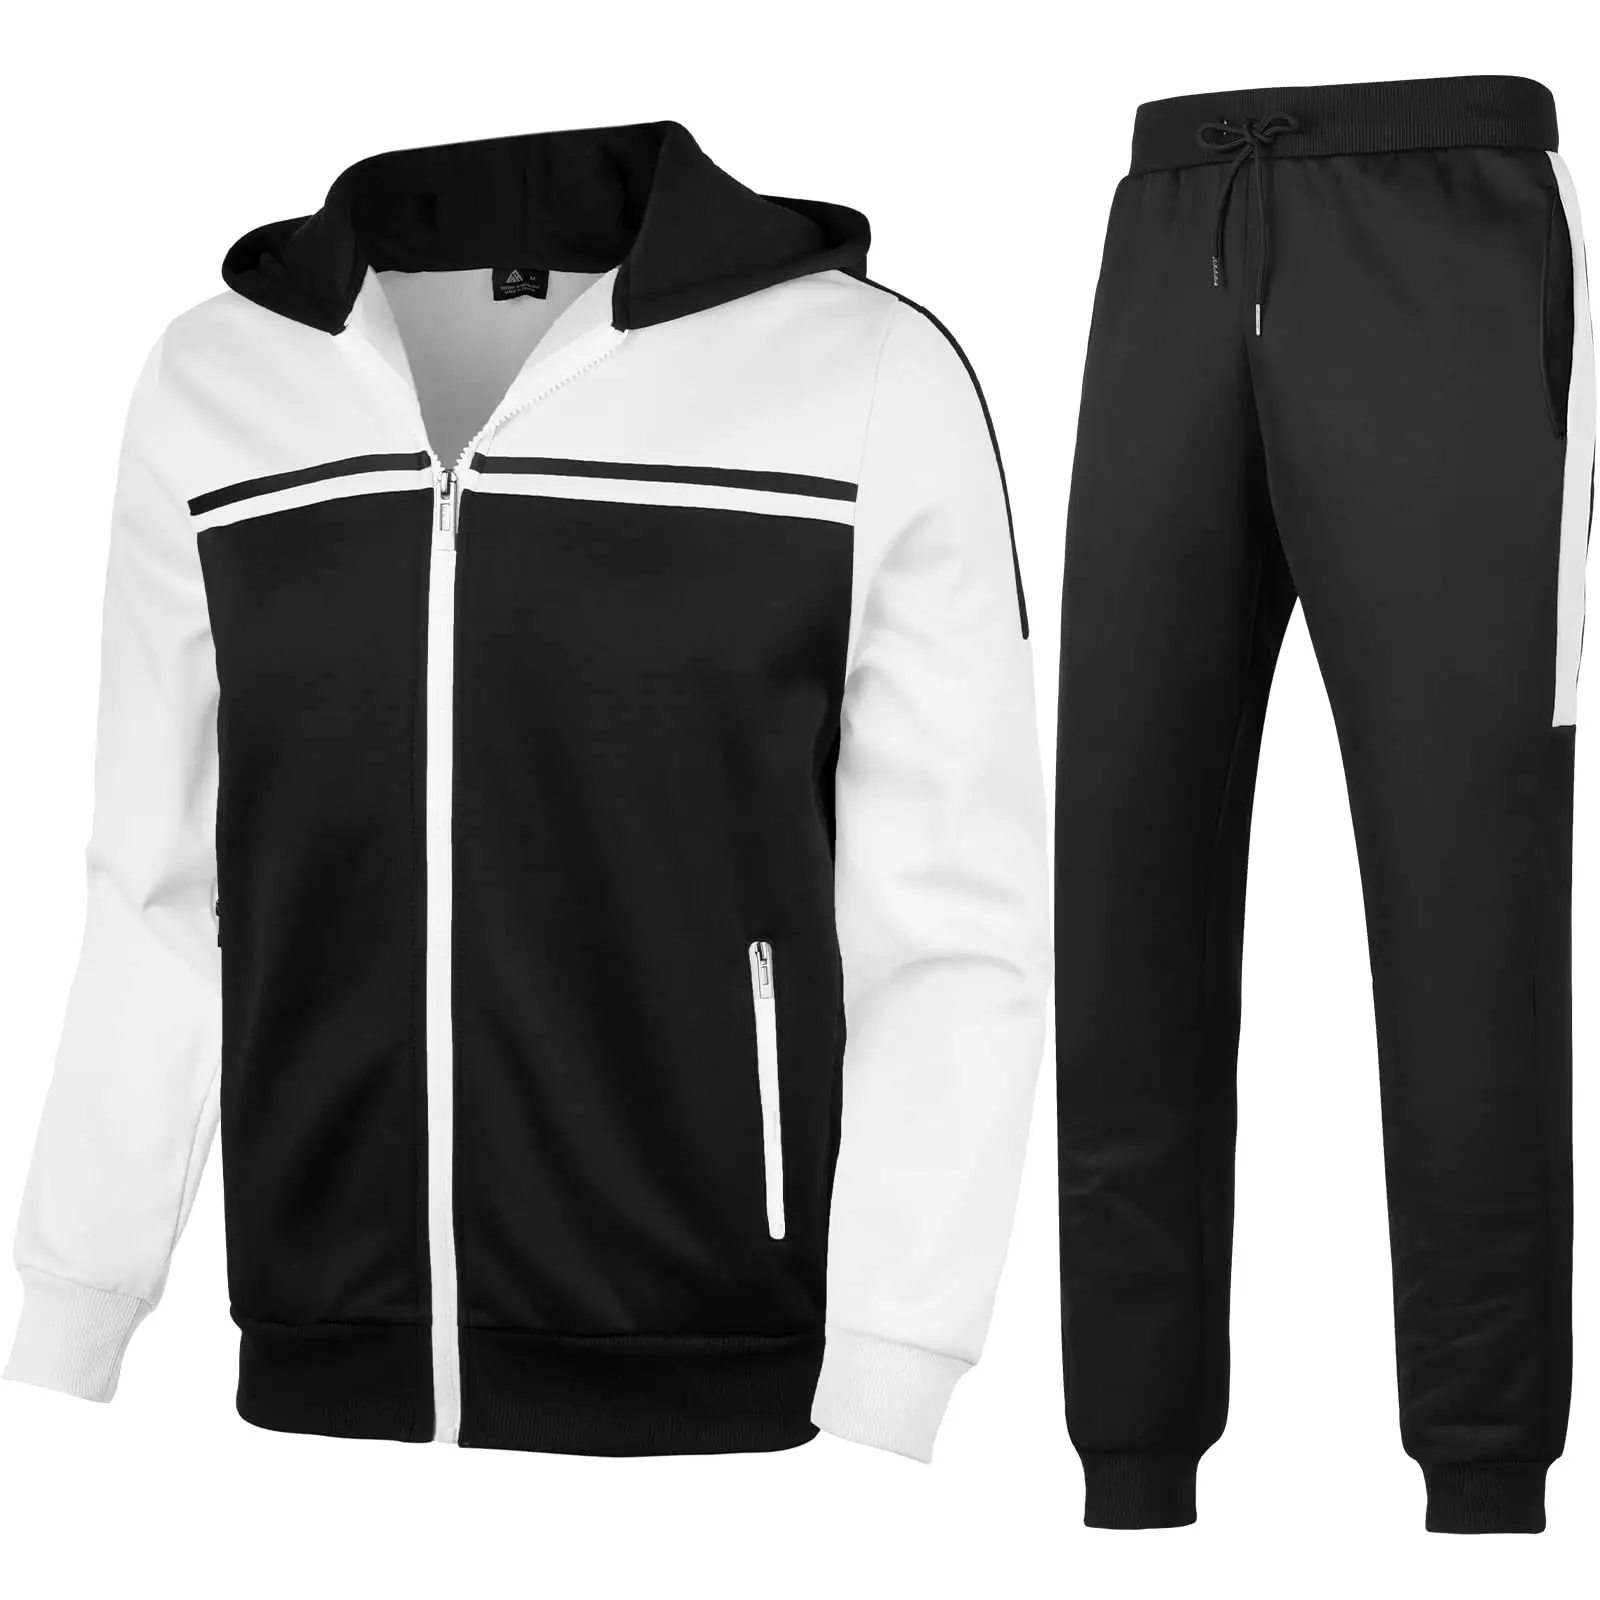 Survêtement pour homme Survêtement athlétique décontracté Ensembles avec poches zippées Survêtement pour homme Vêtements de sport pour homme Jogging